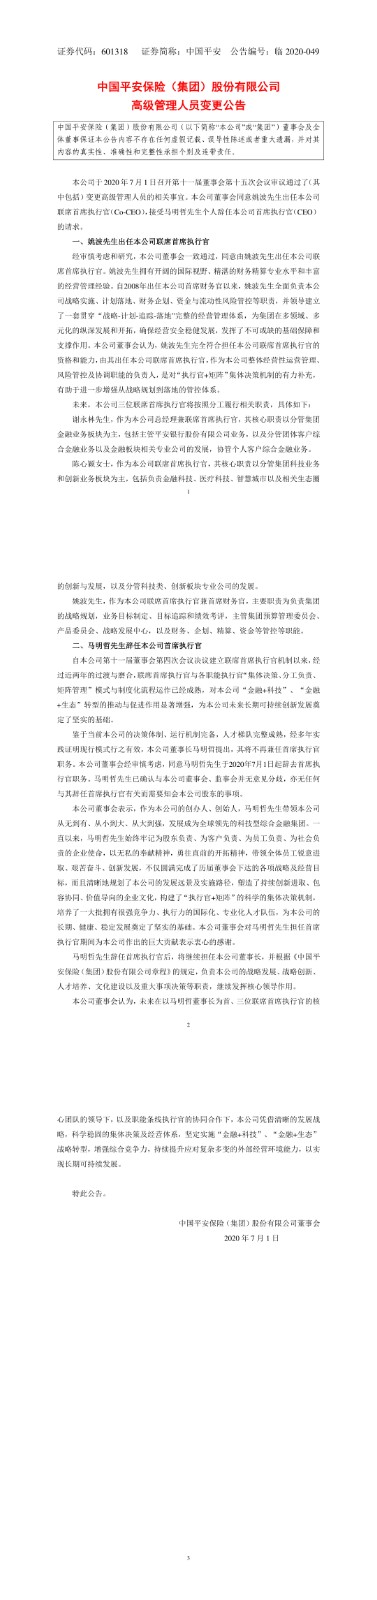 中国平安创始人马明哲辞去CEO职务